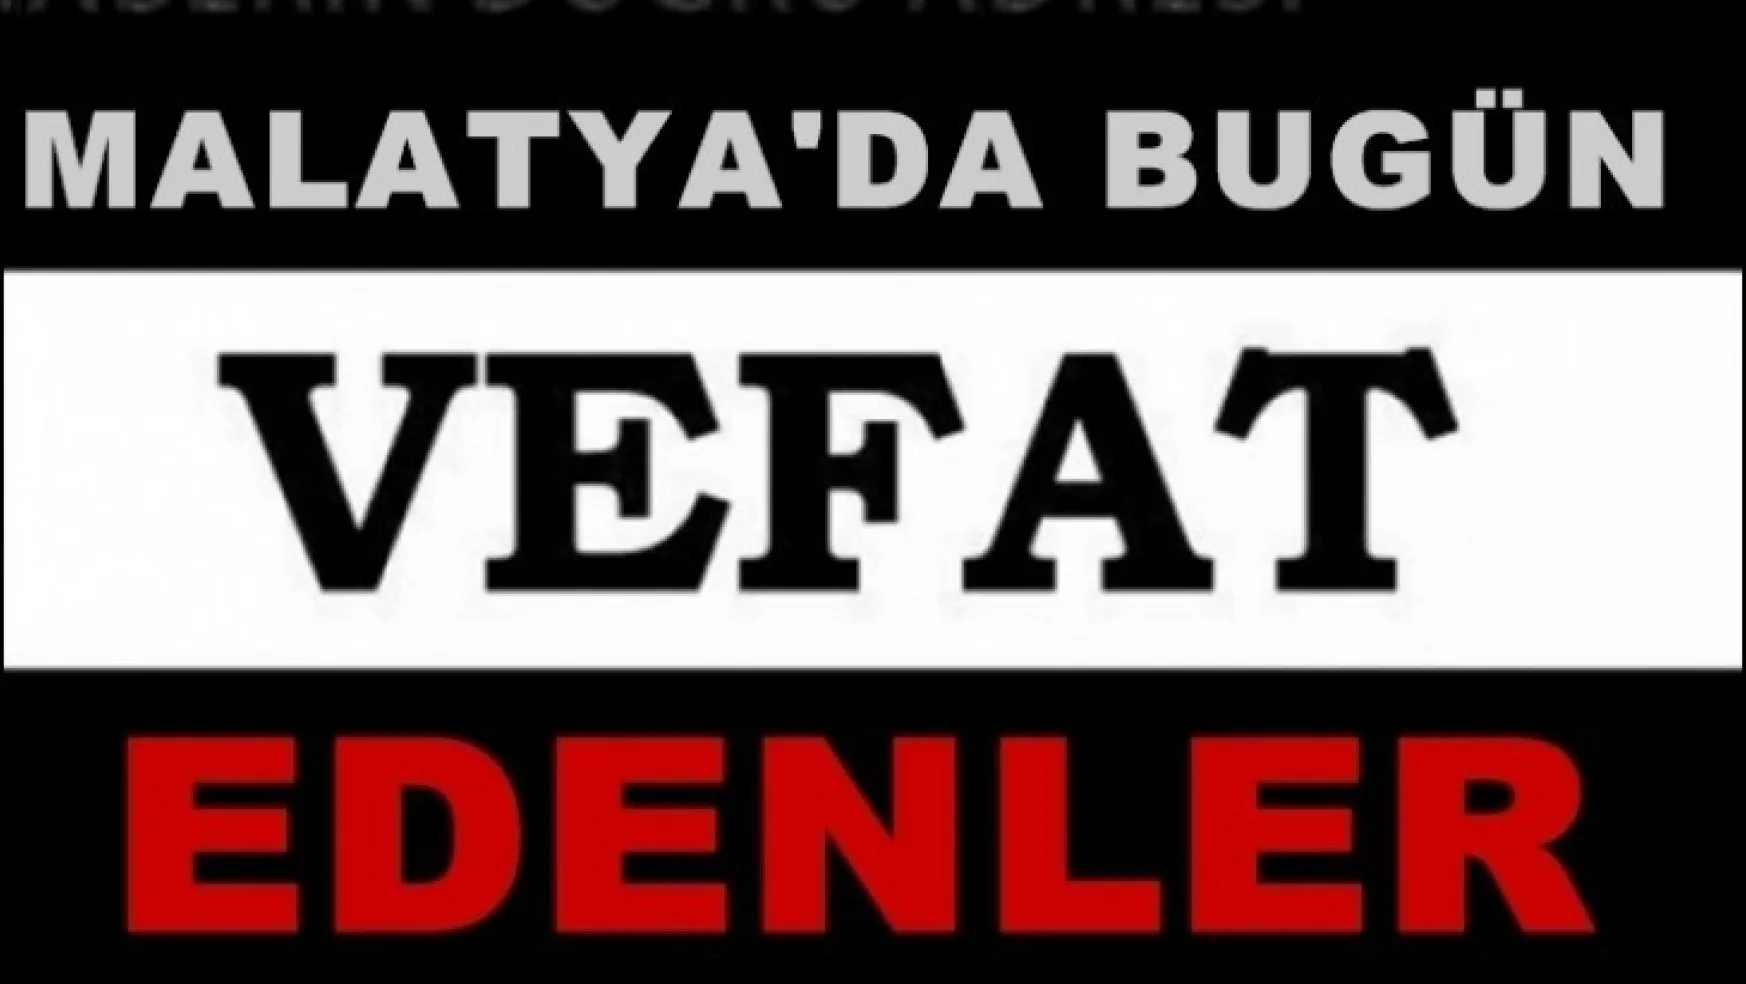 Malatya'da Bugün 20 Kişi Vefat Etti..